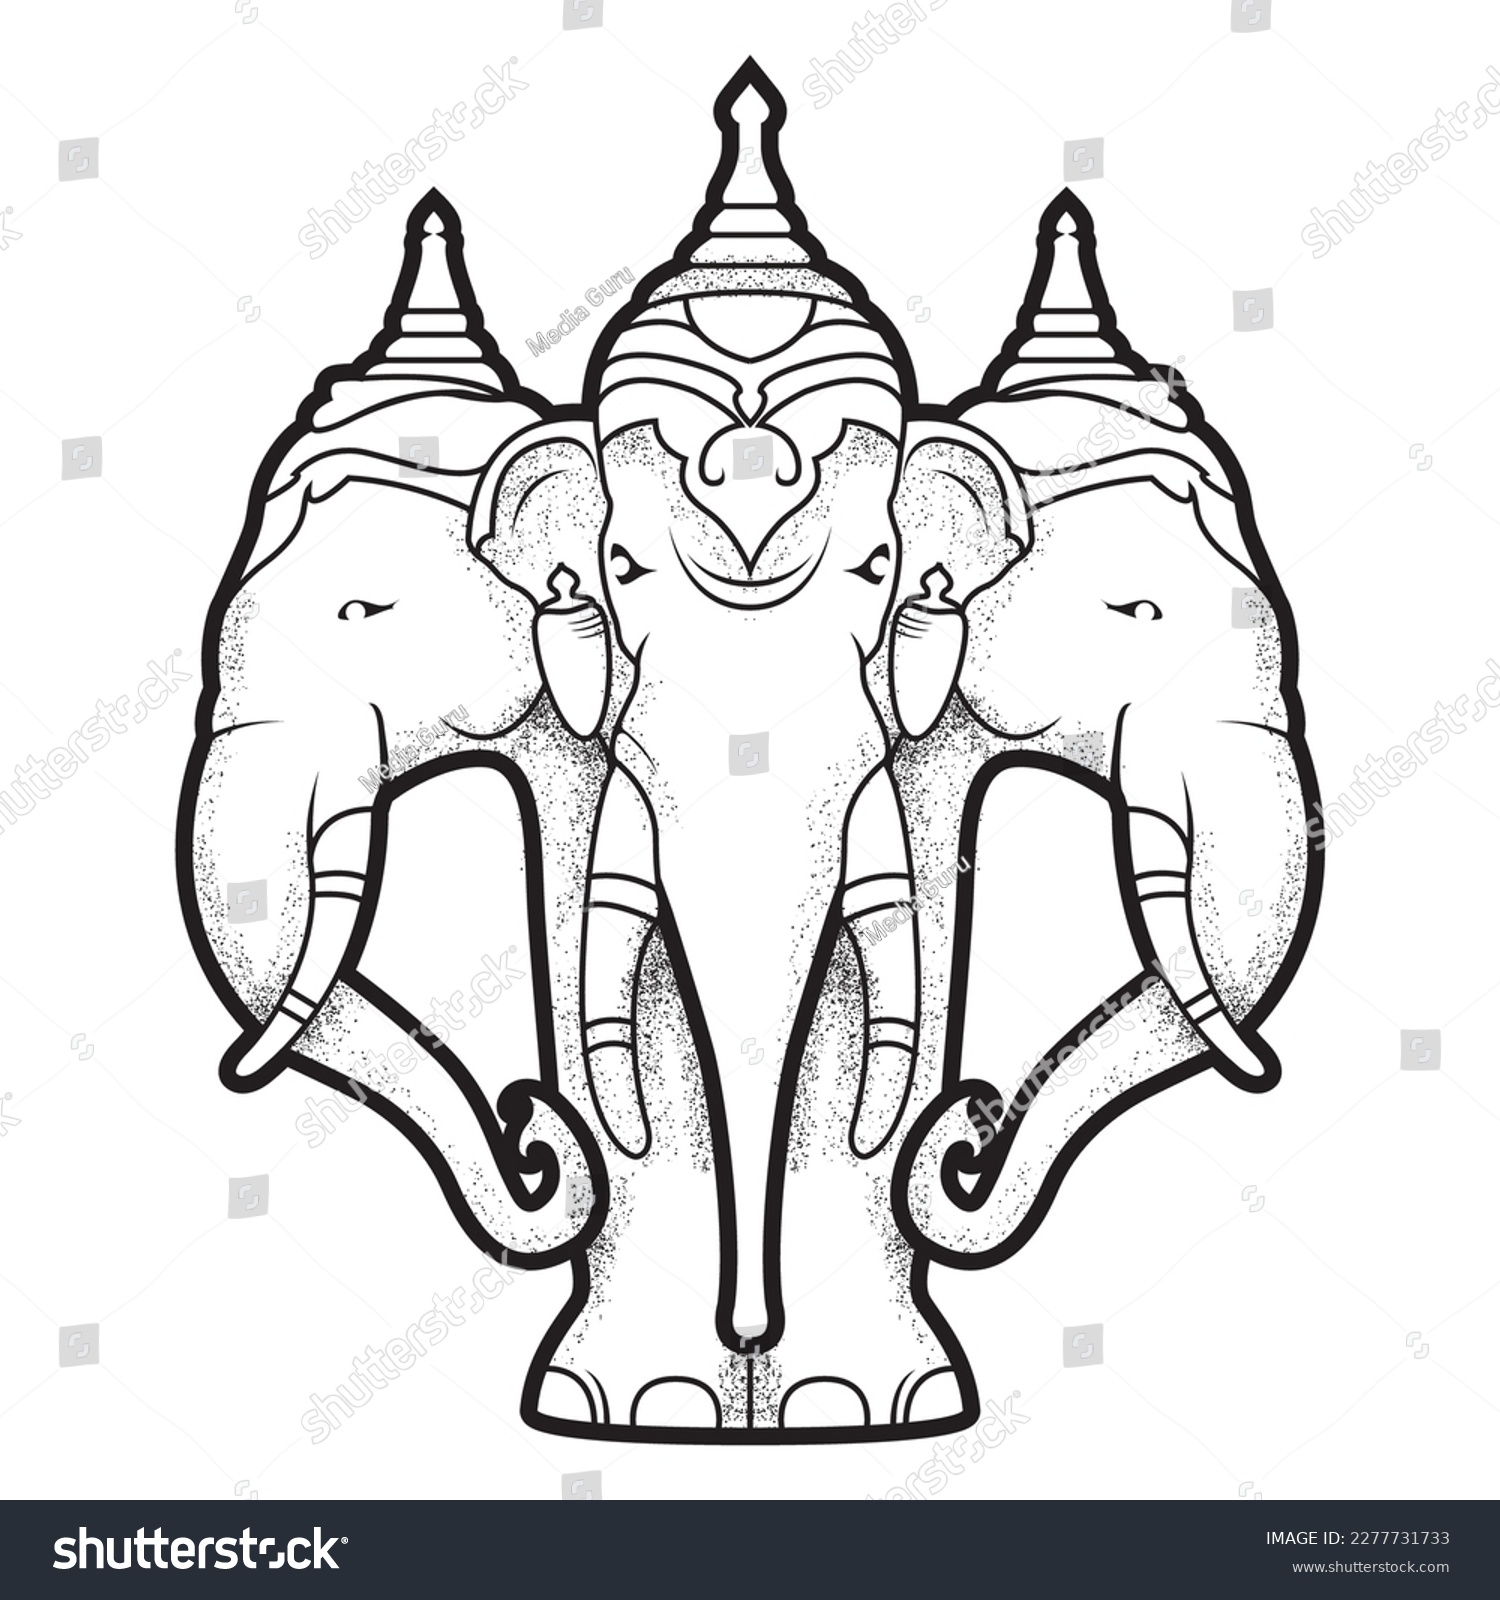 SVG of Airavata, mythological white elephant with many heads, abhra-matanga elephant of deity Indra, hindu mythology, vector svg